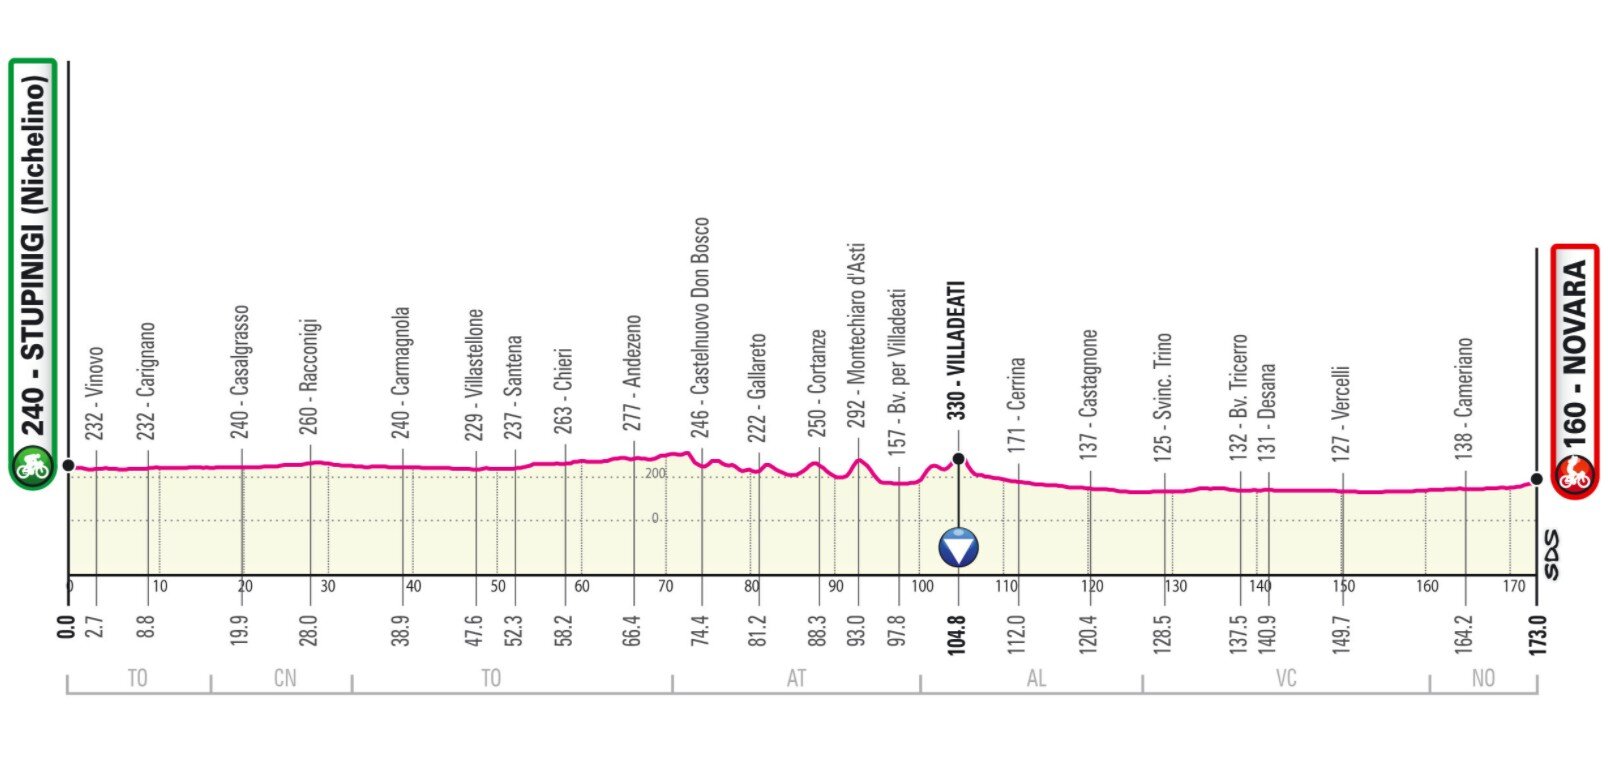 Stage 2 Giro Italia 2021